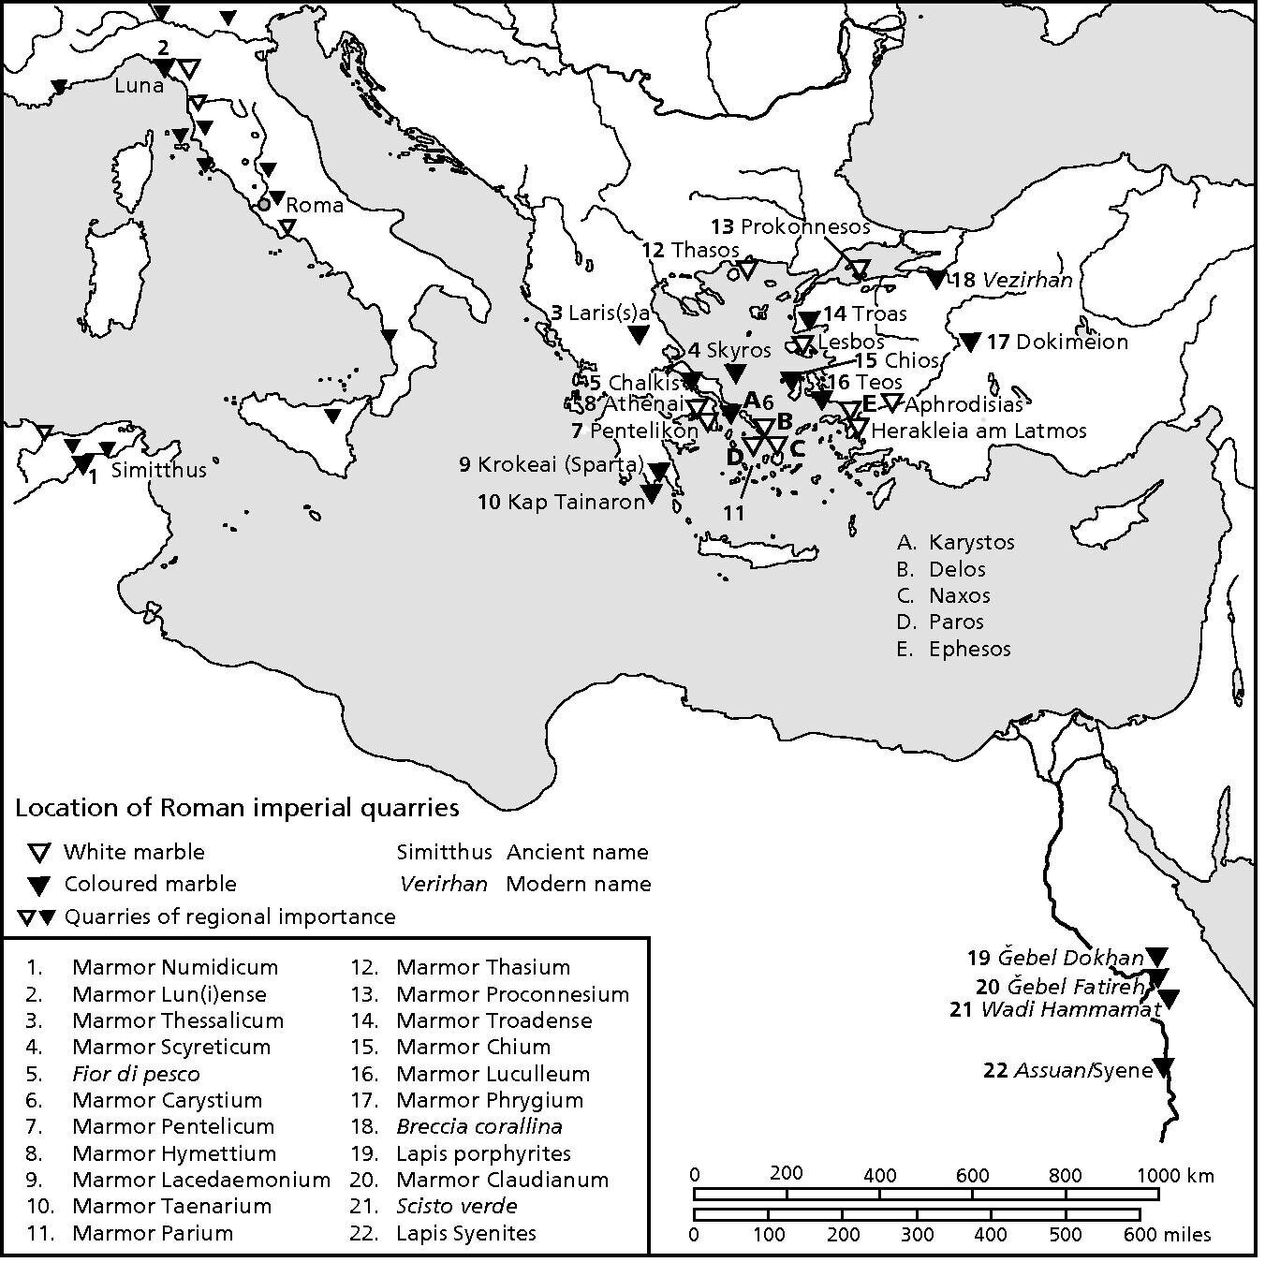 Χάρτης 1. Χάρτης της κεντρικής και ανατολικής Μεσογείου με τις βασικότερες λατομικές θέσεις προμήθειας λευκών και εγχρώμων μαρμάρων και λίθων κατά την Ρωμαϊκή Περίοδο. 